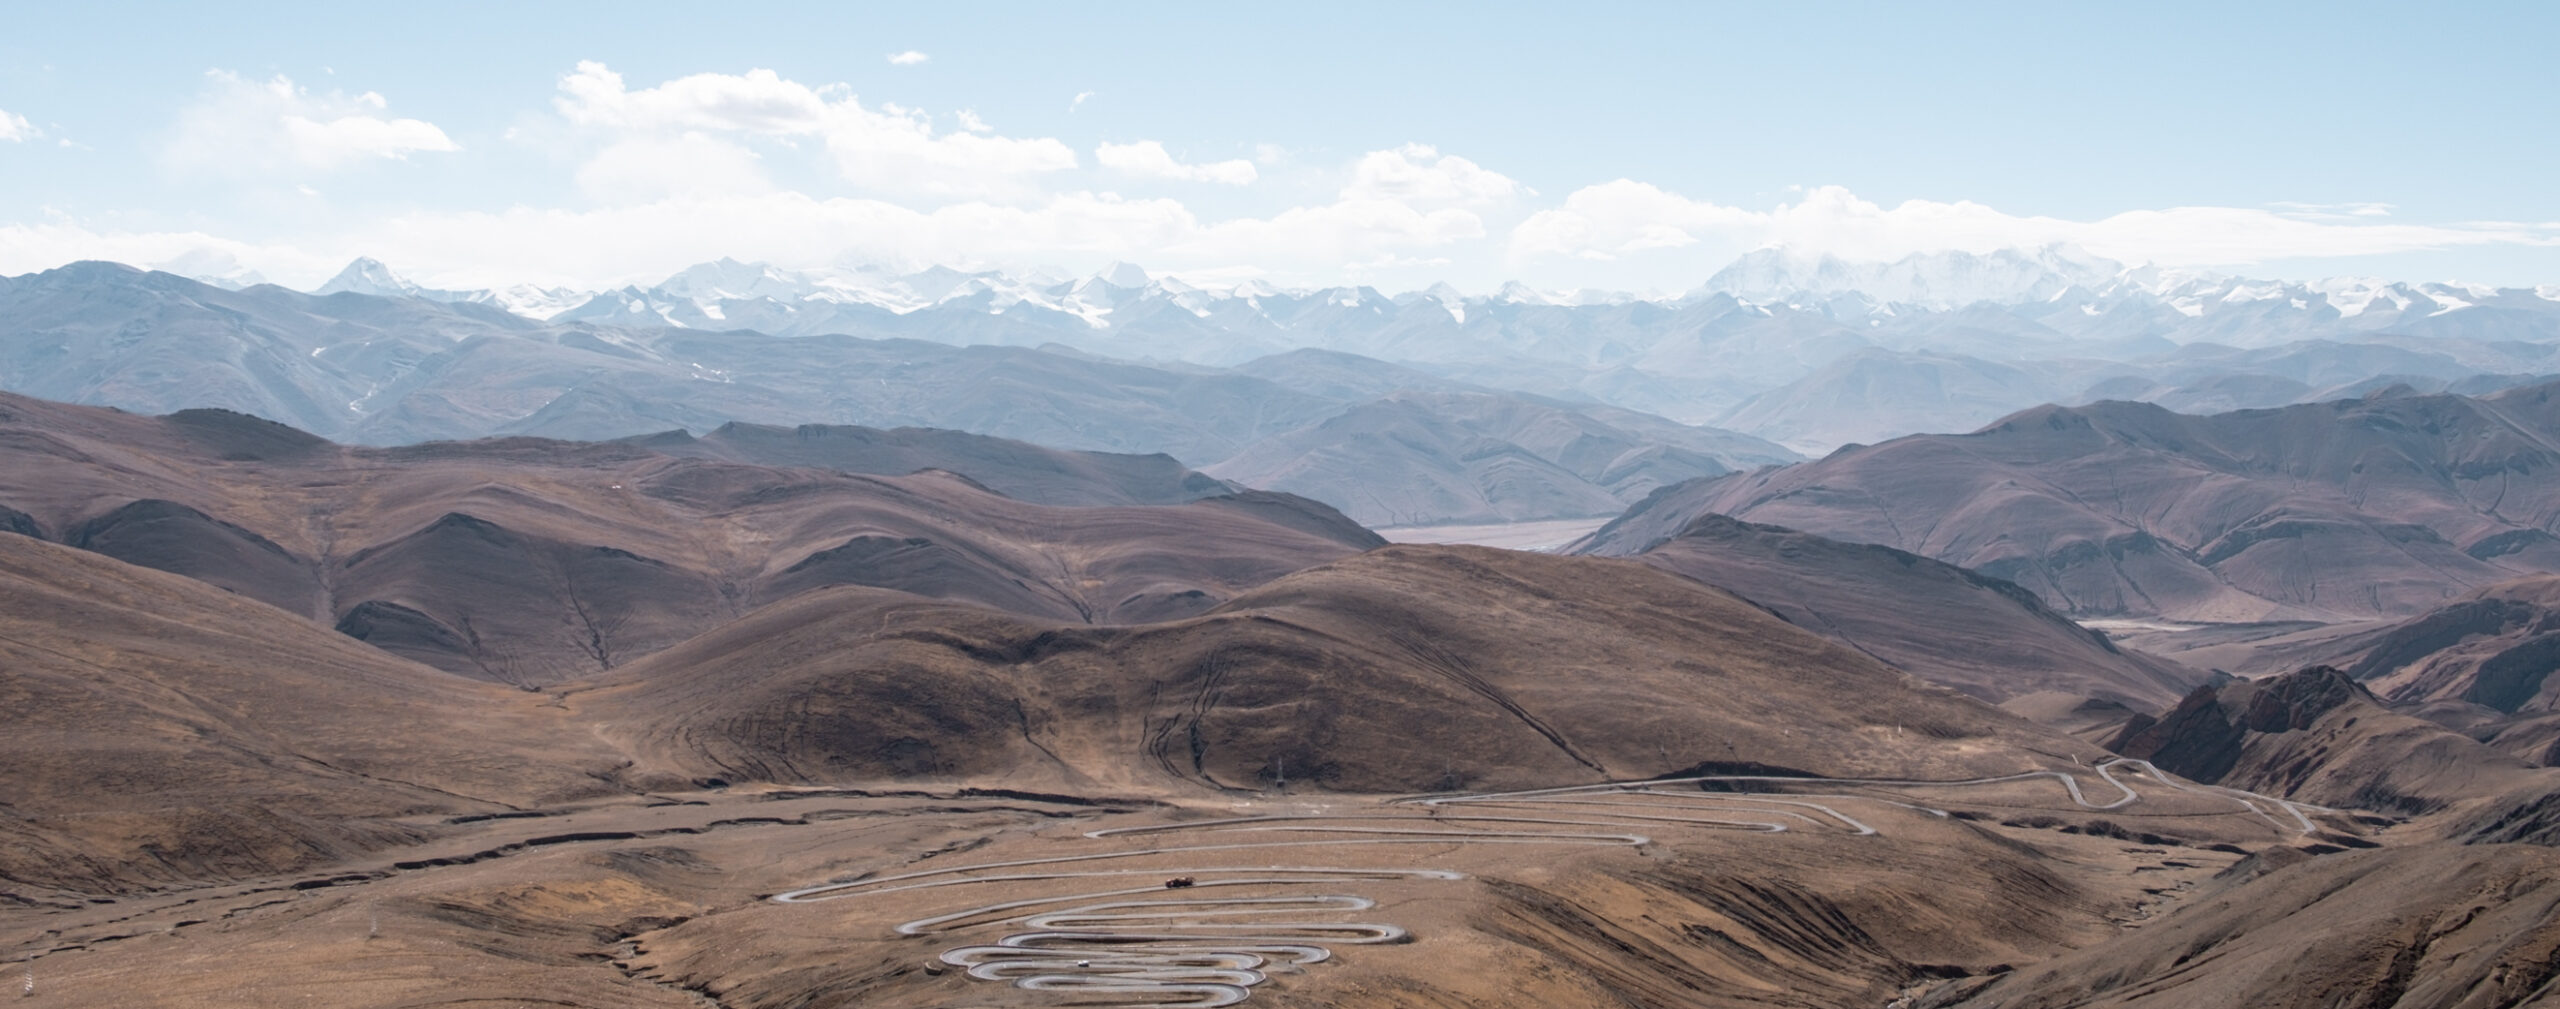 Sieben Tage in Tibet – Teil 2